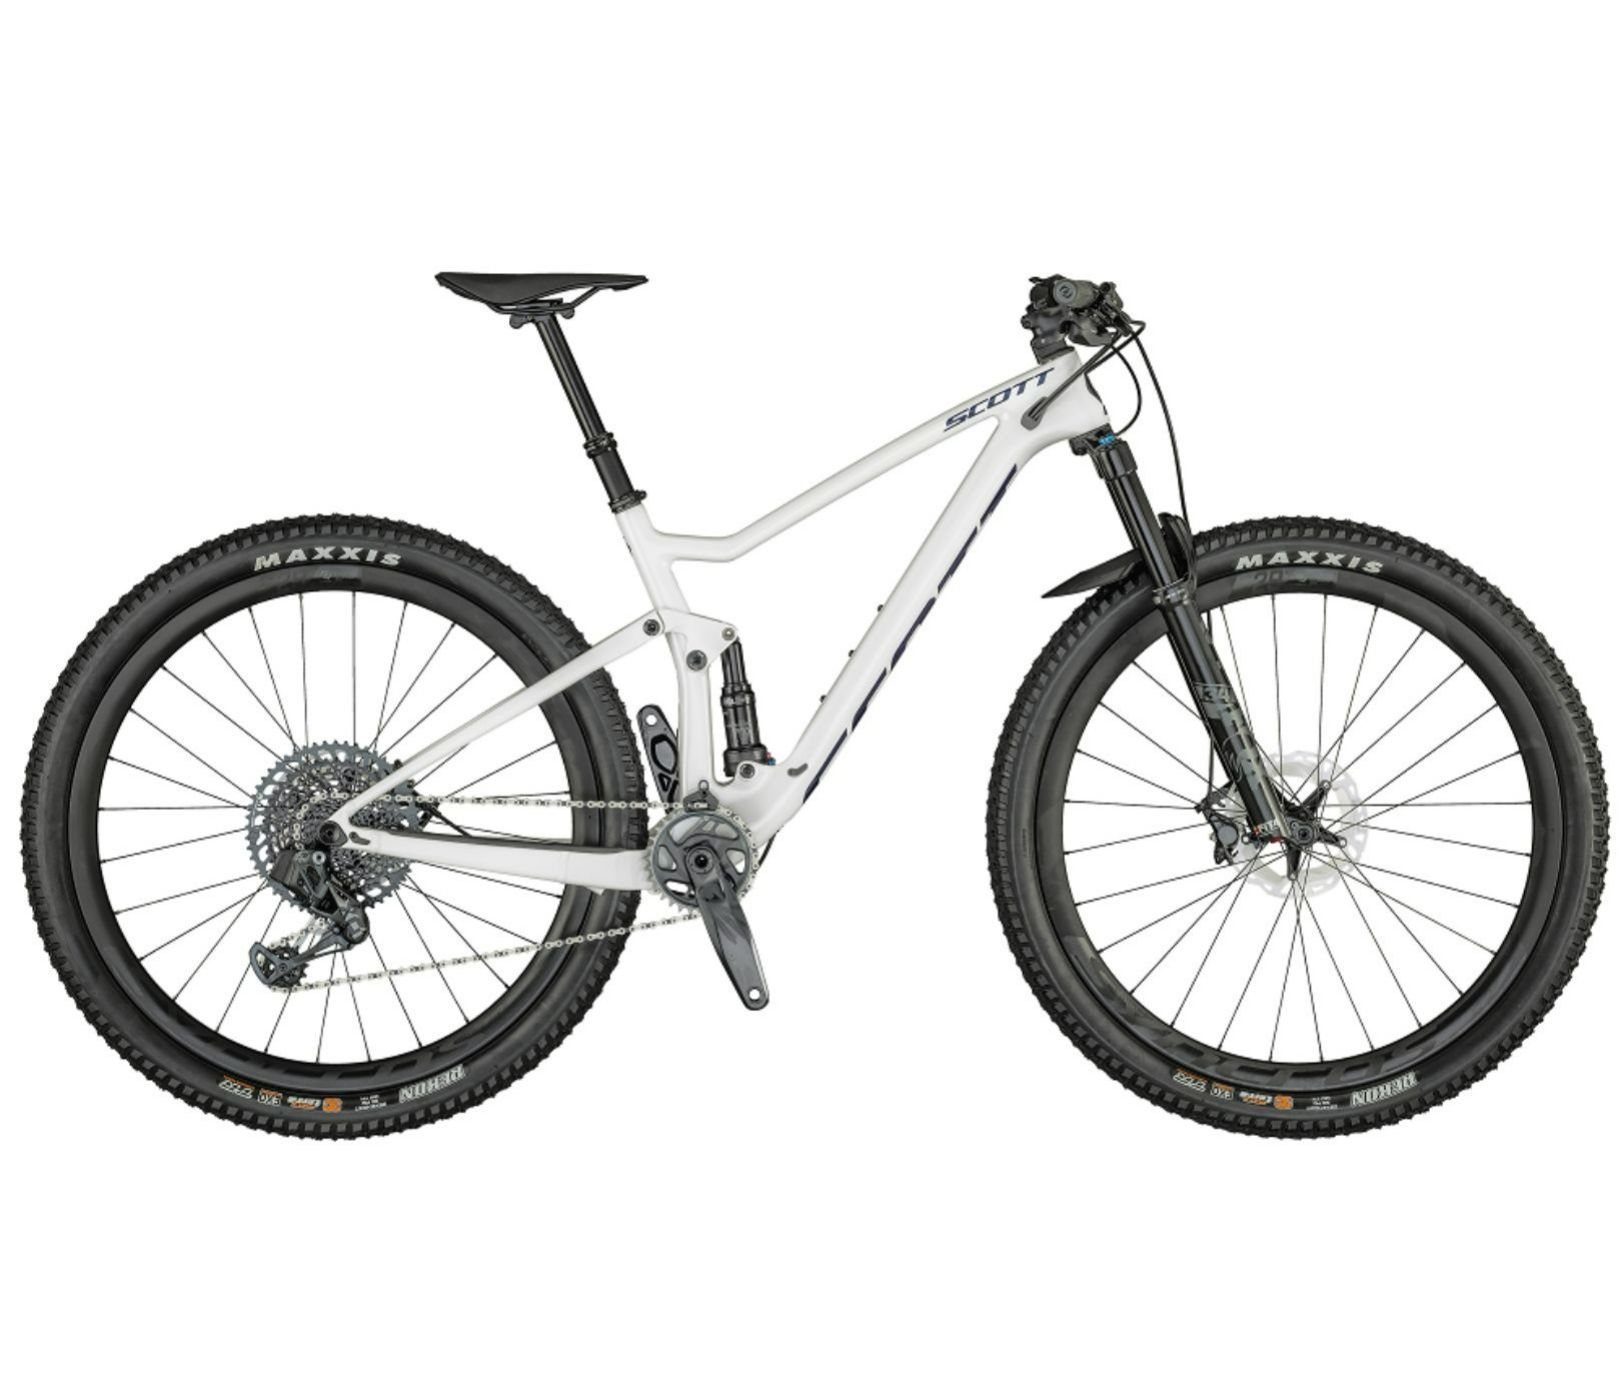 2021 Scott Spark 900 AXS Dual Suspension Carbon Mountain Bike